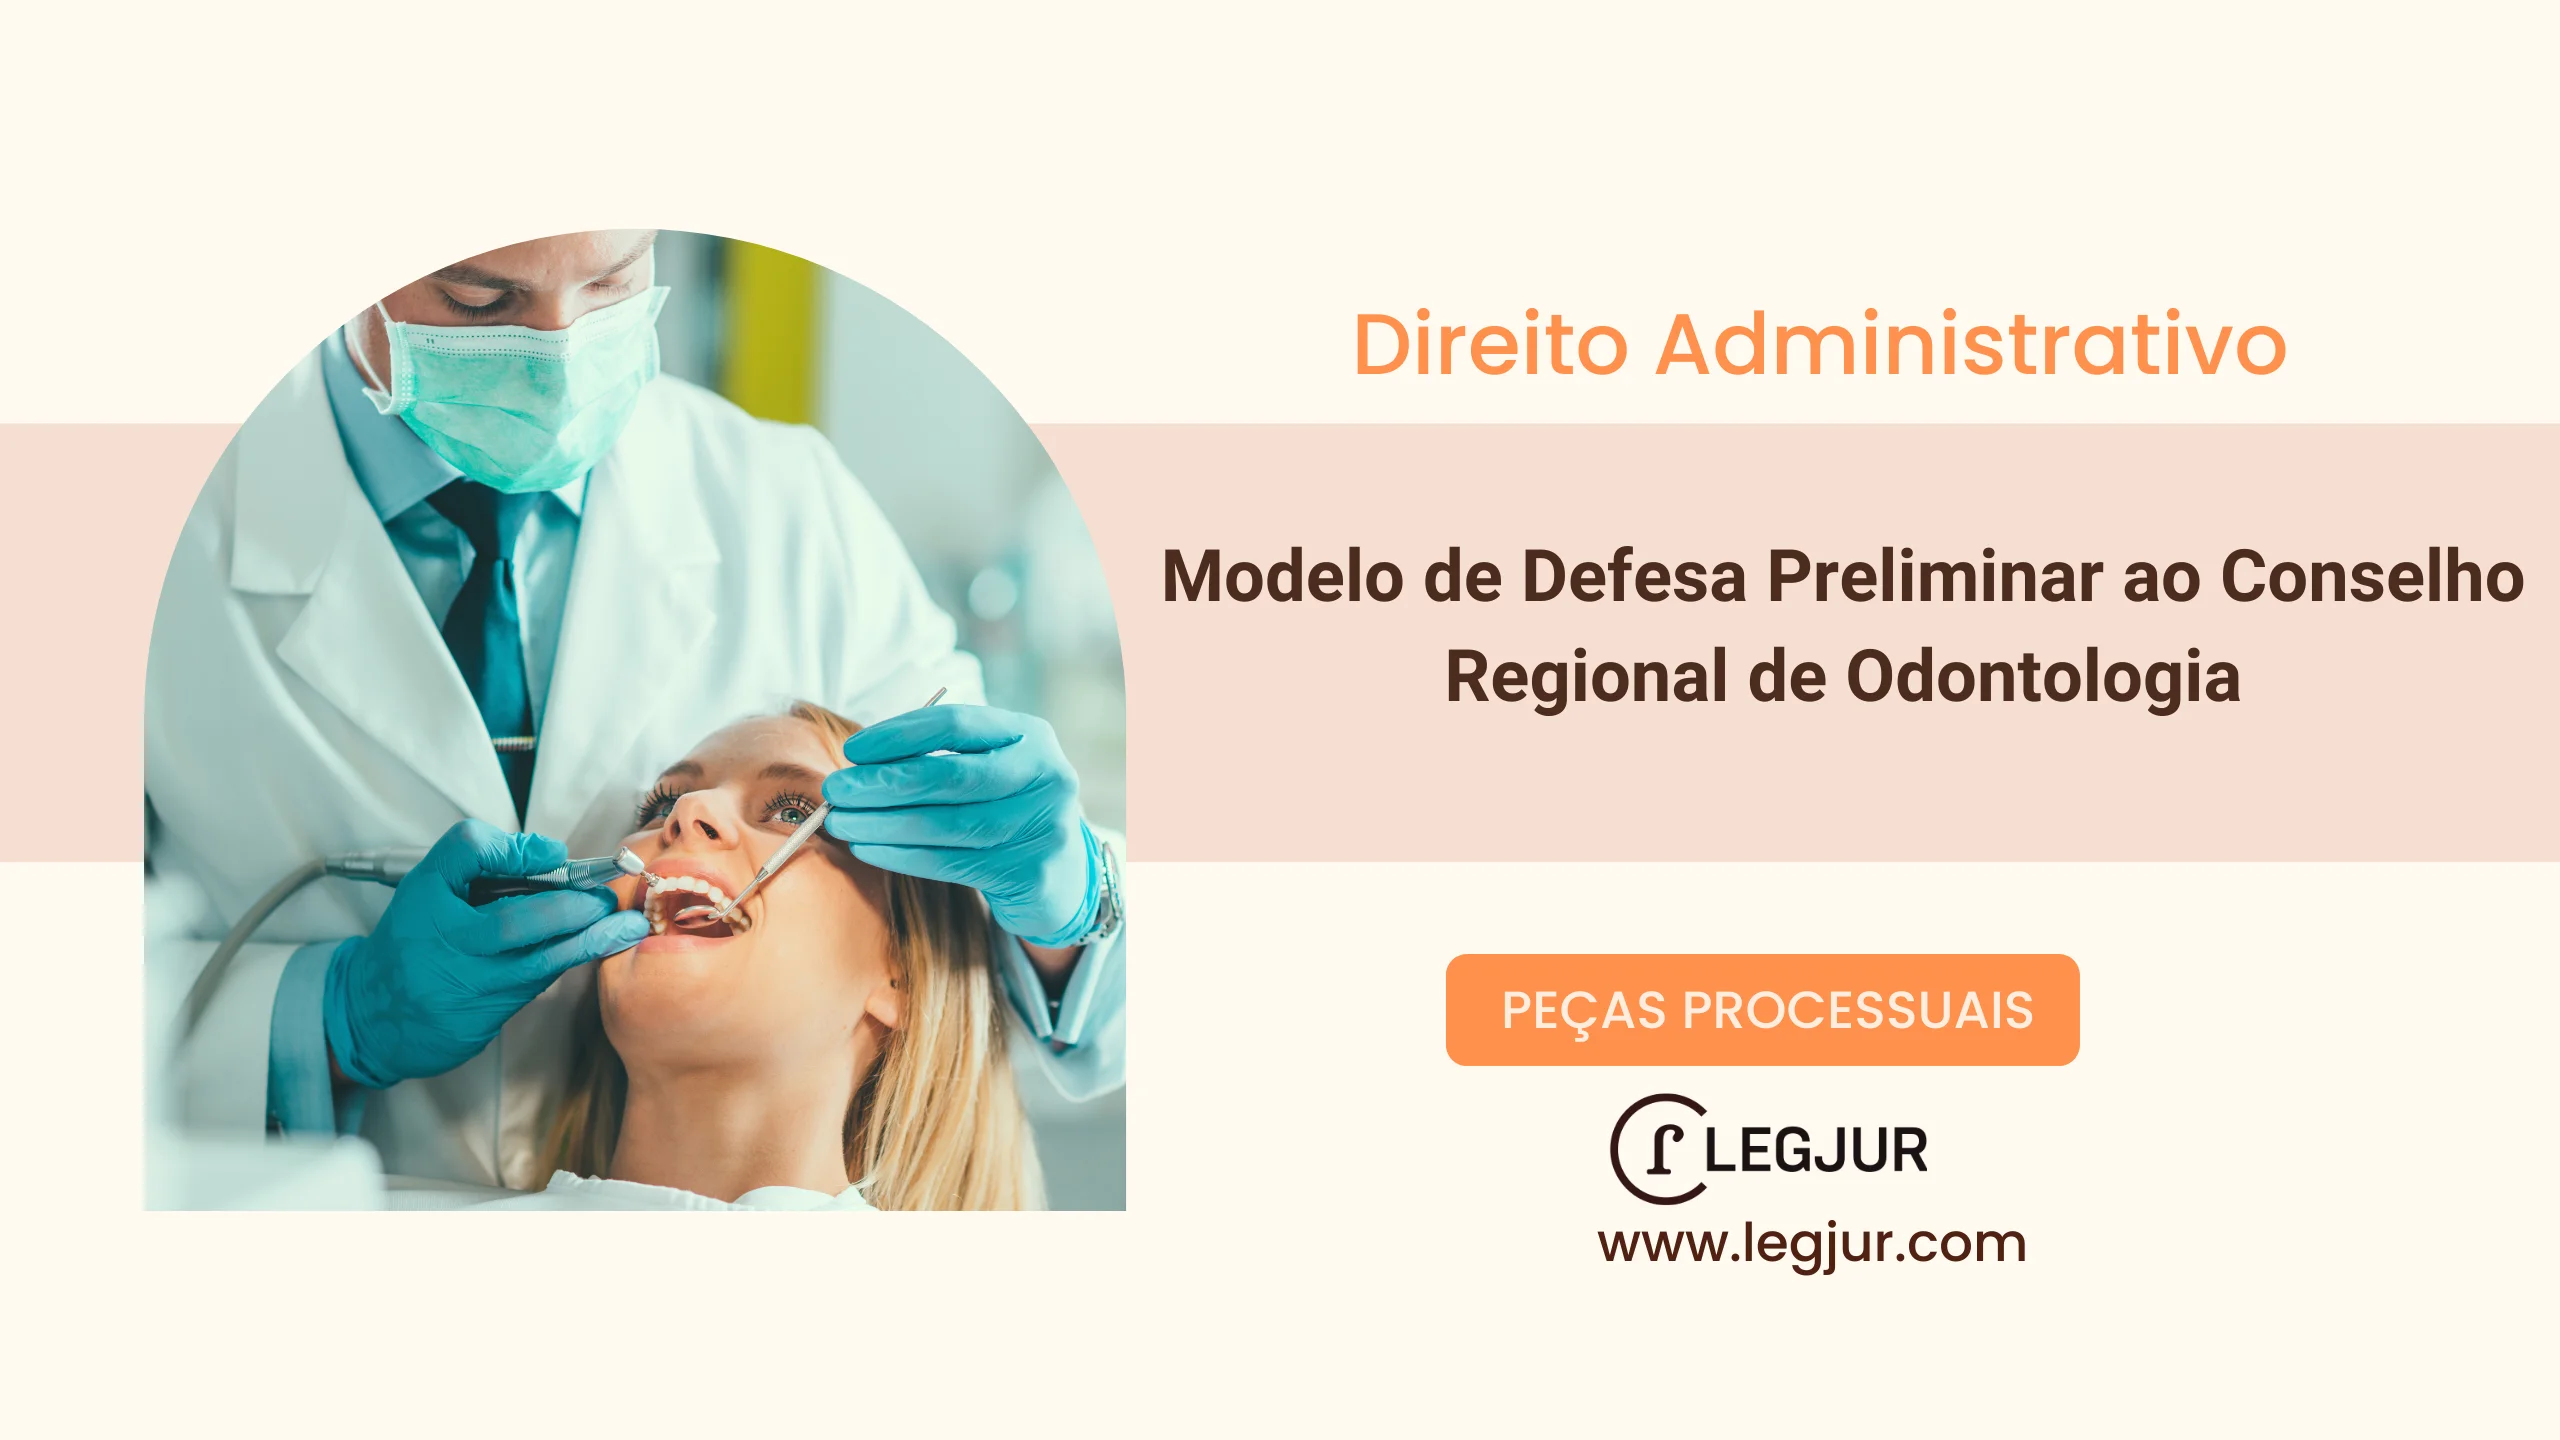 Modelo de Defesa Preliminar ao Conselho Regional de Odontologia